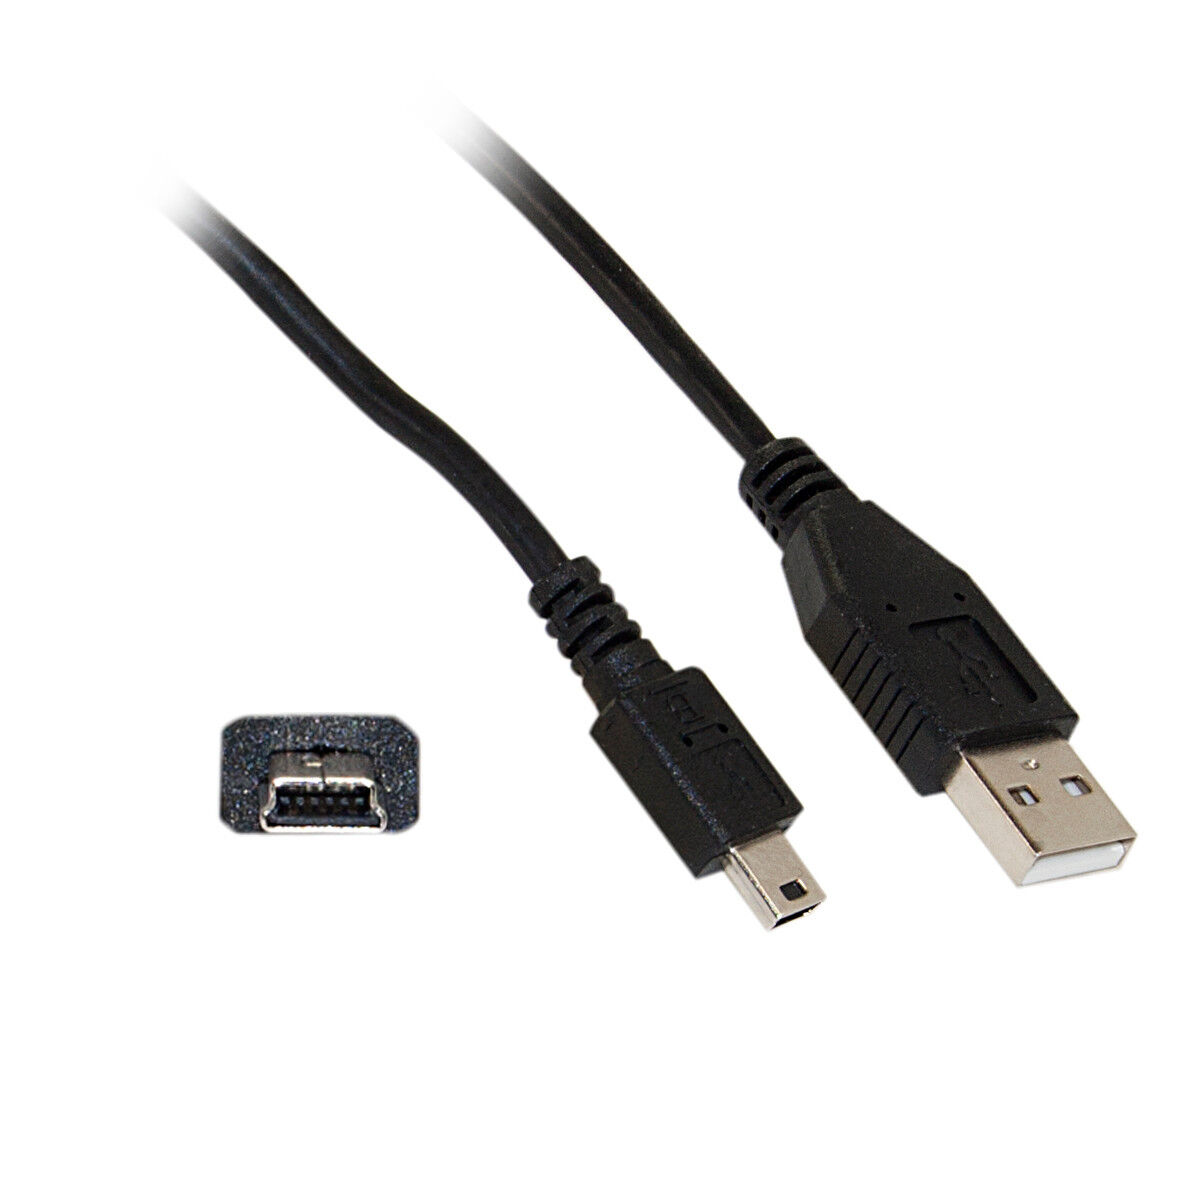 15ft Mini USB 2.0 Cable, Black, Type A Male to 5 Pin Mini-B Male  10UM-02115BK